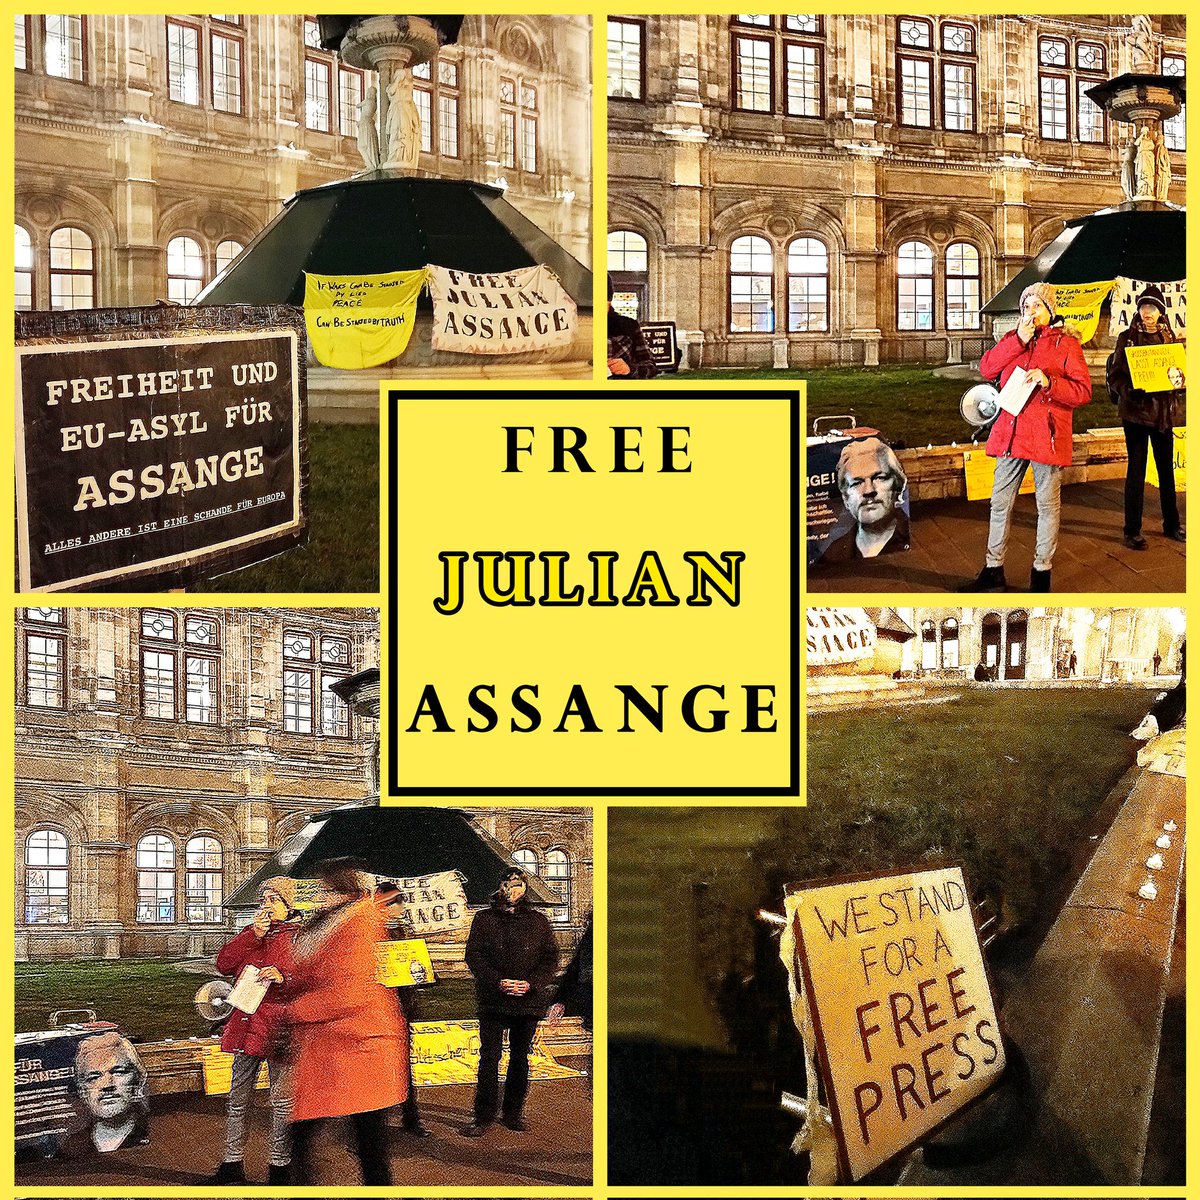 ⏳Mahnwache via #Candles4Assange #Wien⏳ 

Mahnwache für #JulianAssange in Wien    

Wann?  
Mittwochs   
Nächste: 24.04.2024
17 - 19 Uhr.      

Wo?   
Herbert-von-Karajan-Platz neben Oper, 1010 Wien

#FreeAssangeNOW

freeassange.eu/#veranstaltung…